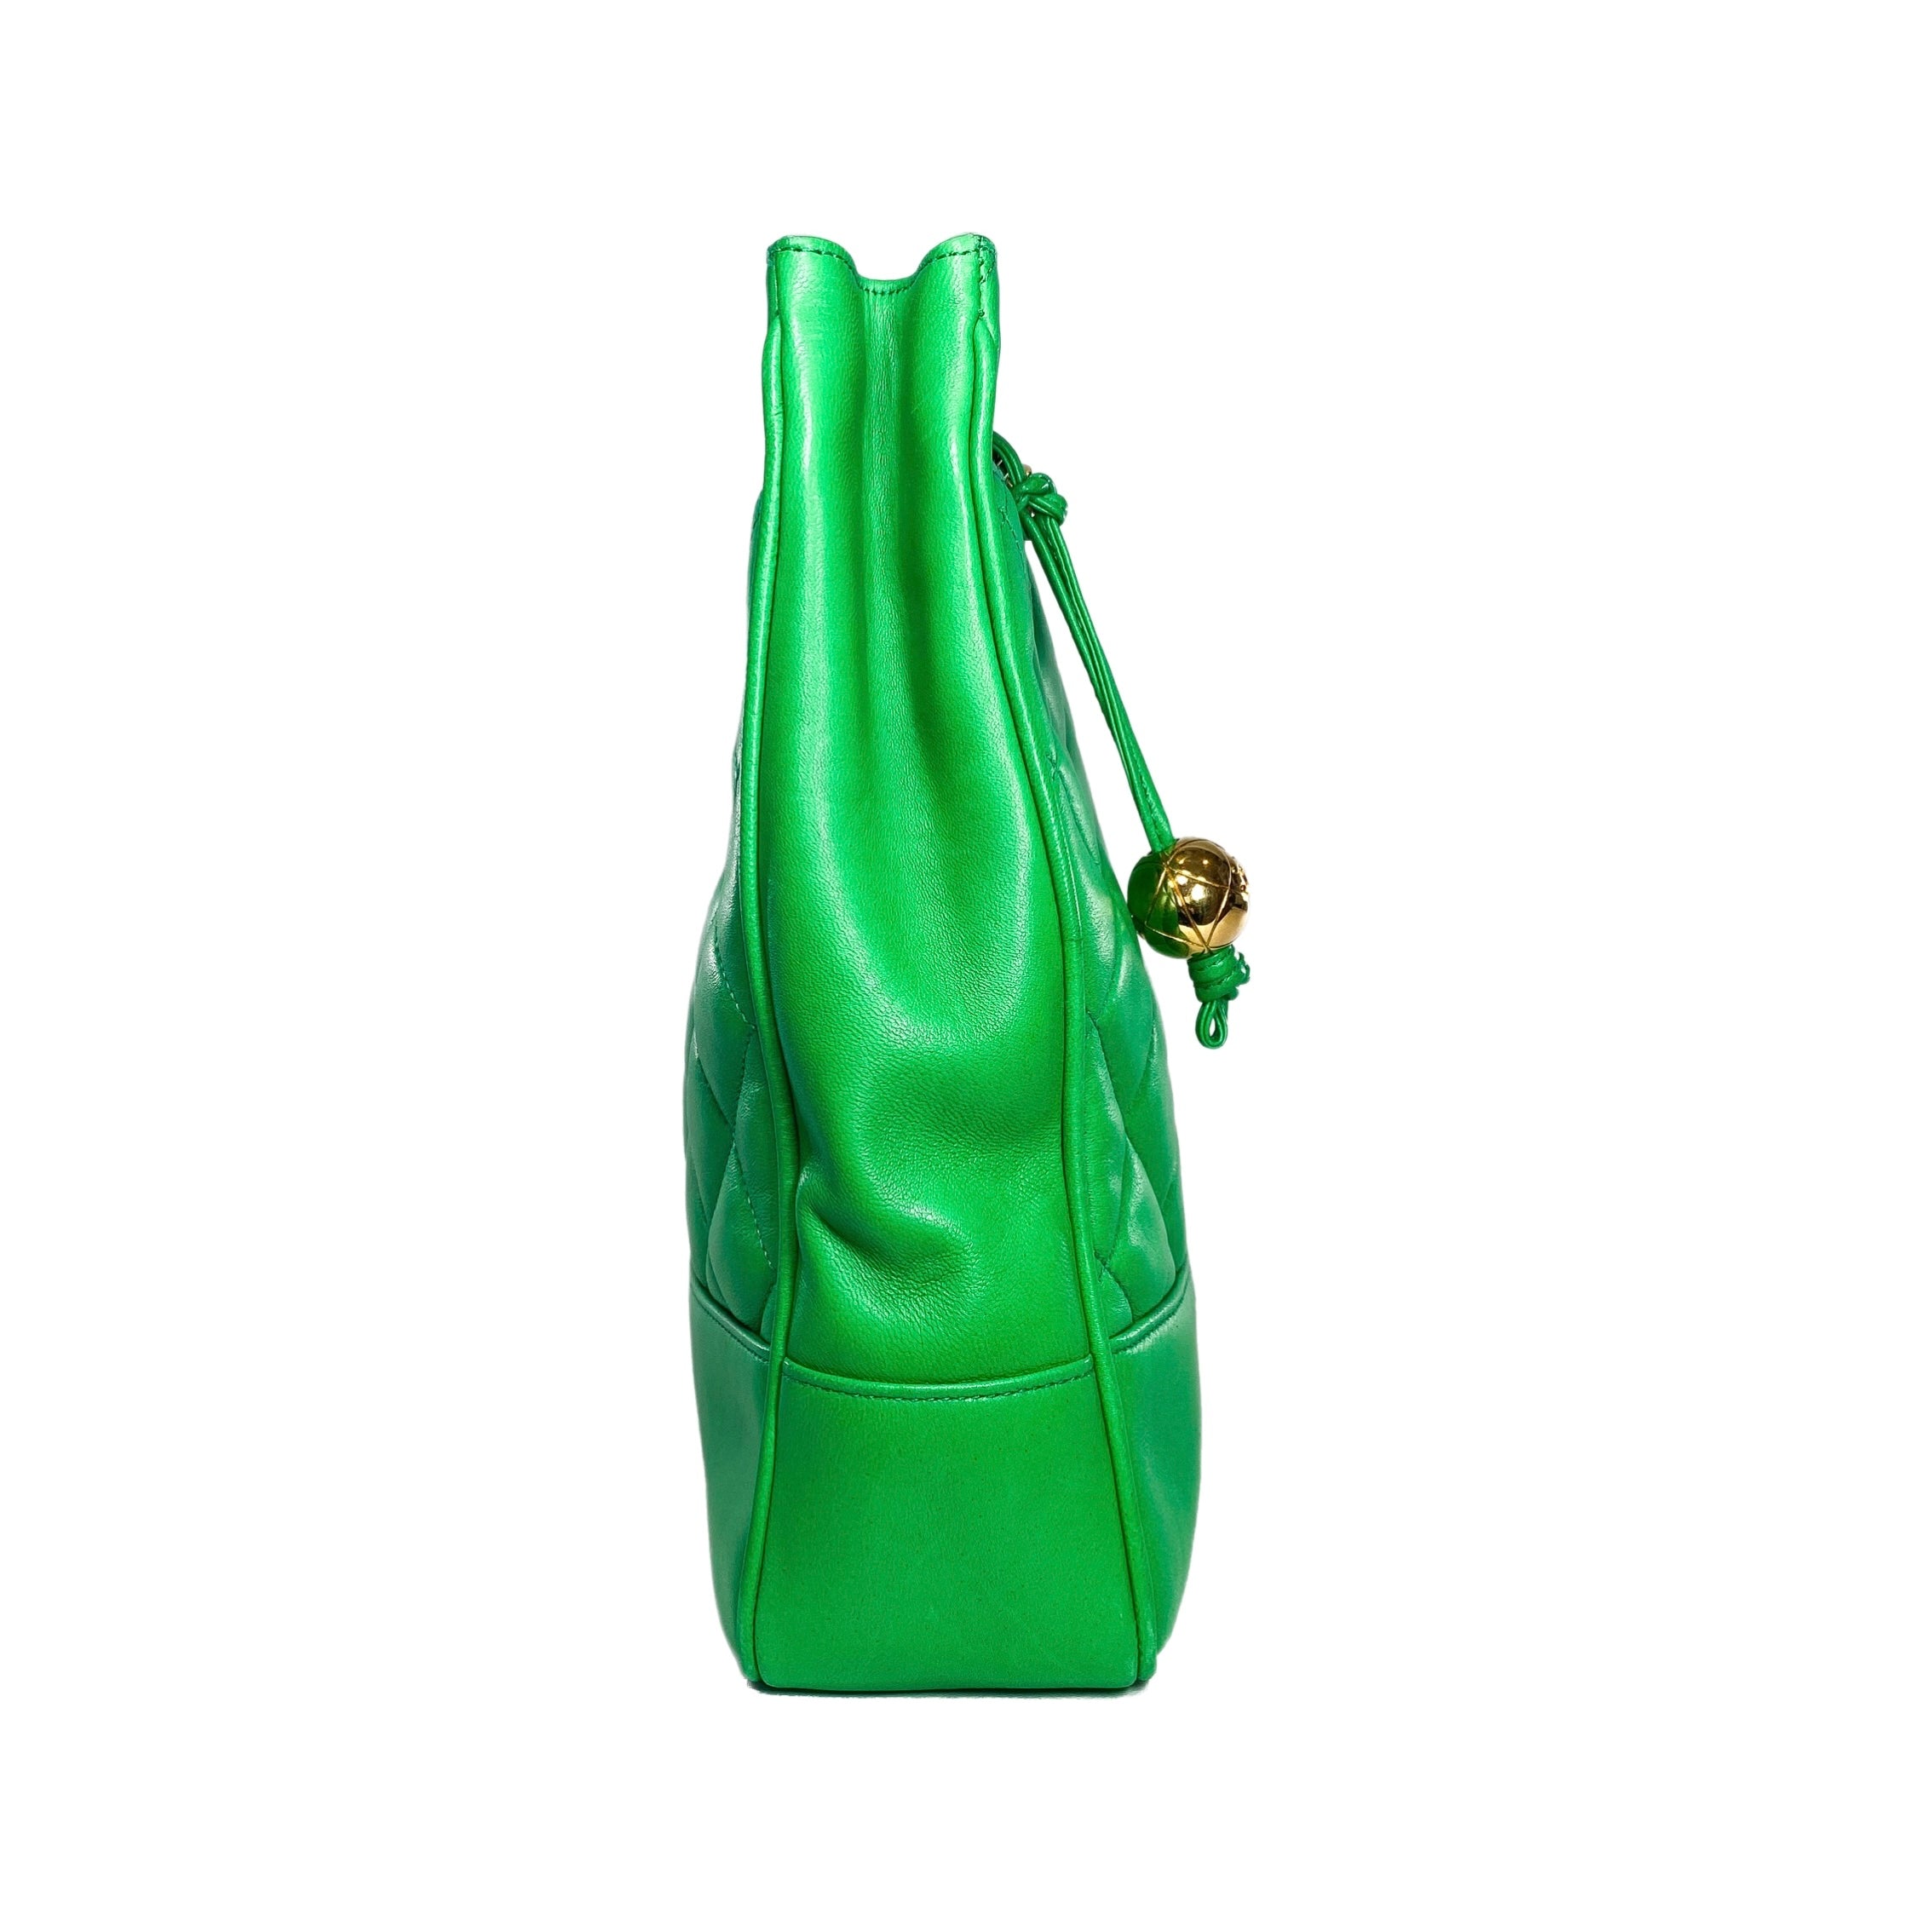 Chanel Green Lambskin Vintage Shoulder Bag